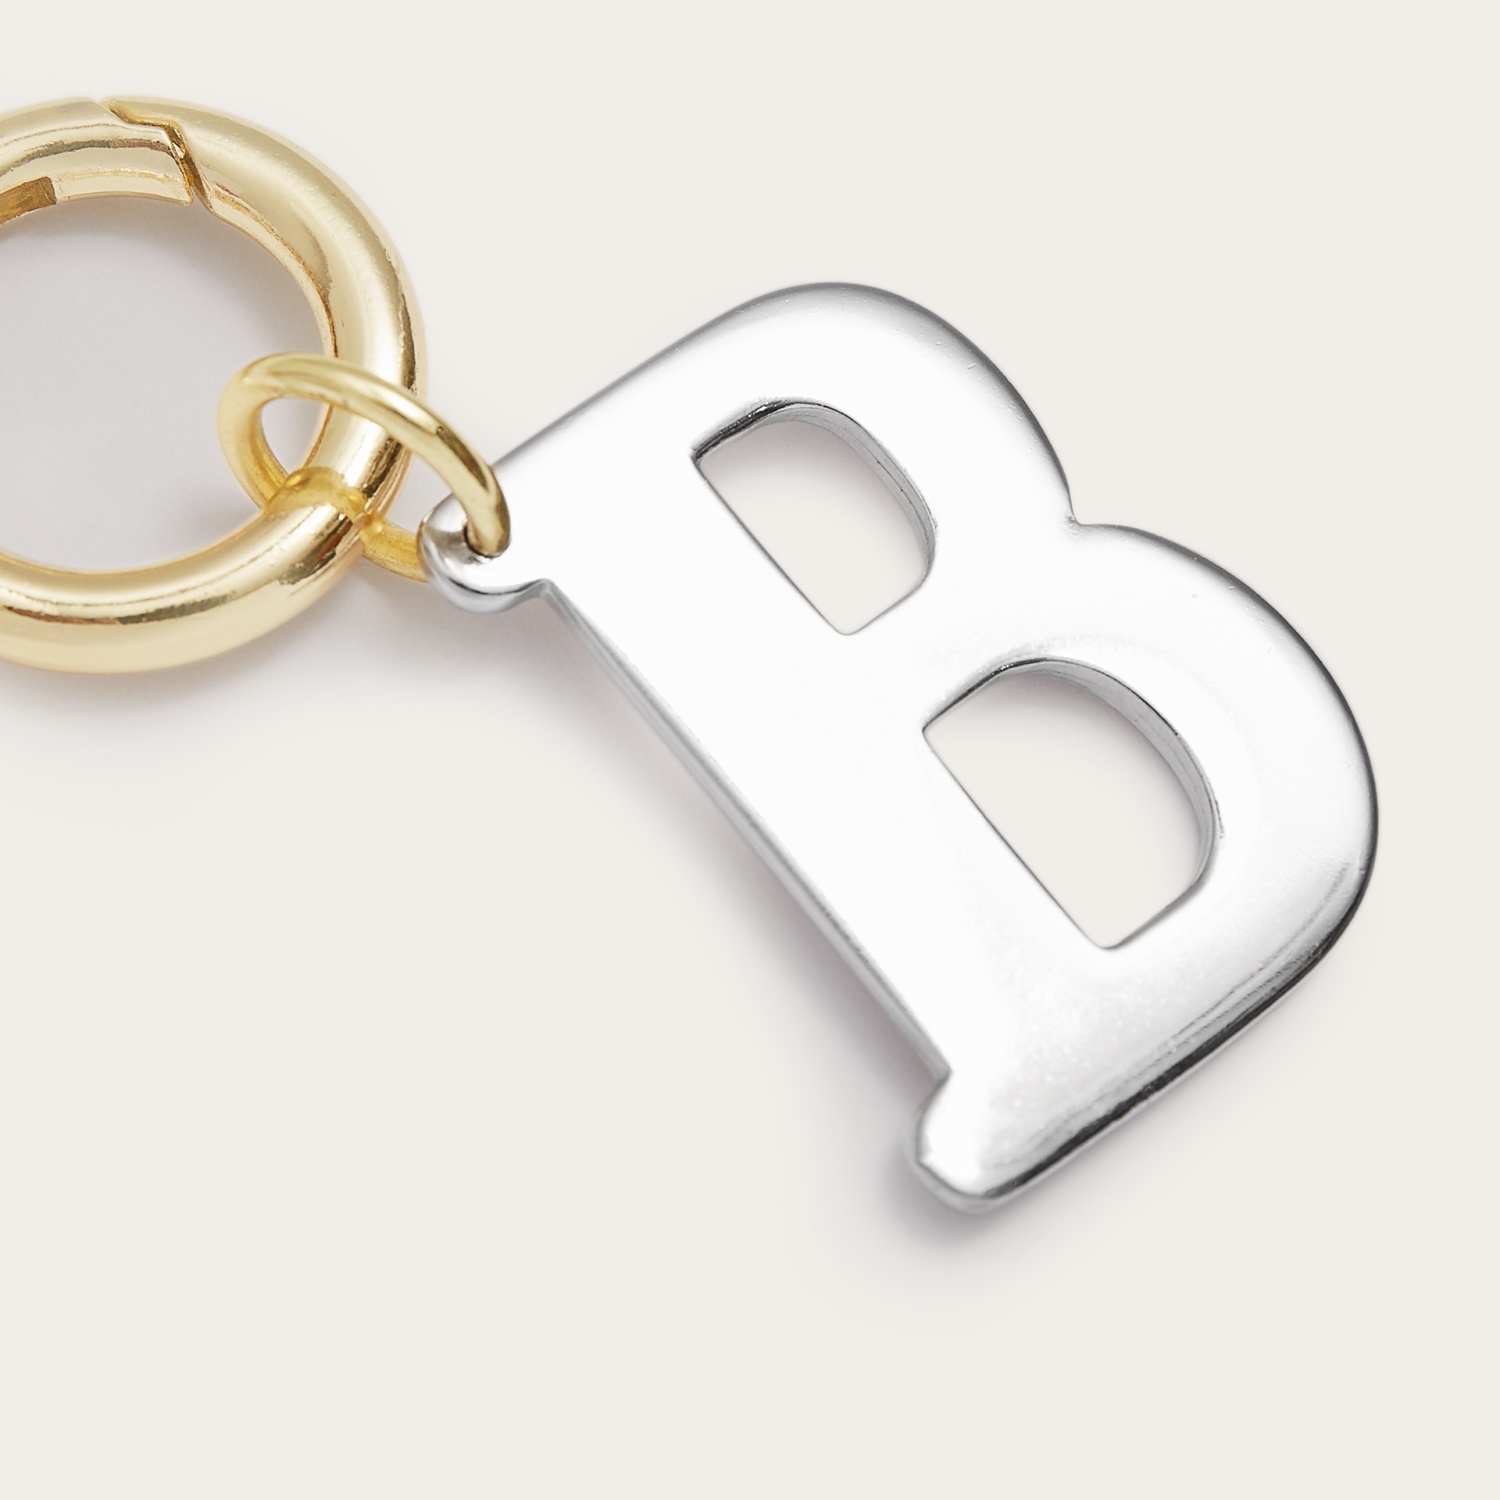 Metal Field Wallet Chain Brass Personalised Key Ring Heavy Duty Rings Metal Carabiner Accessories Loop 12